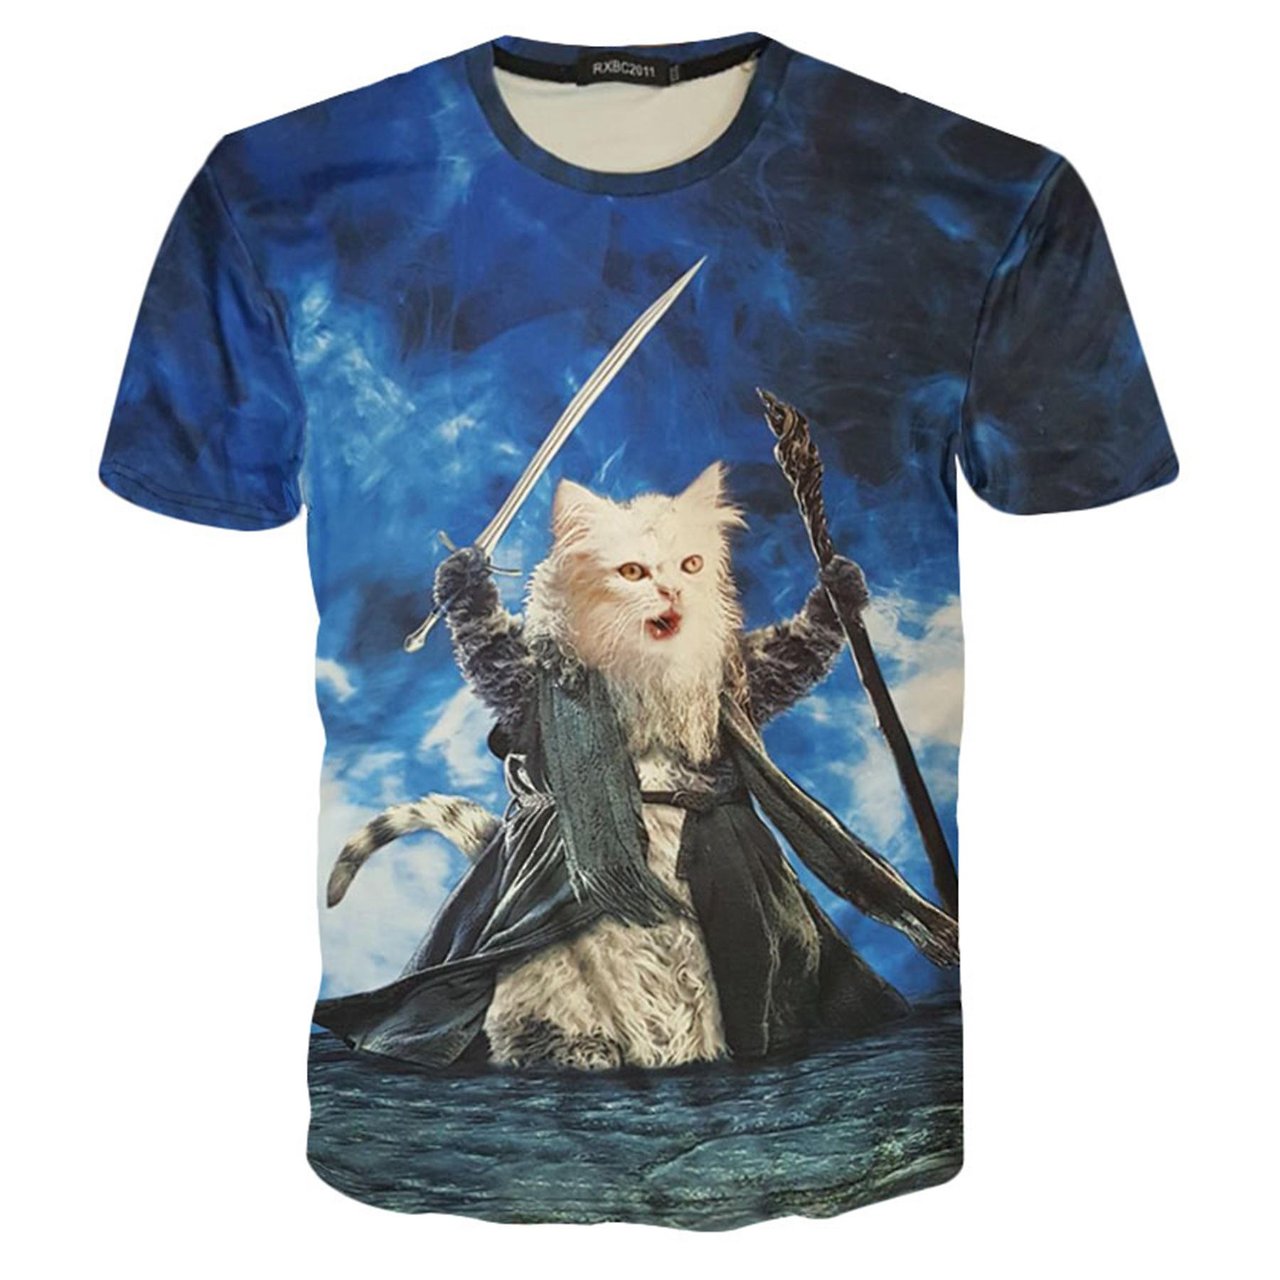 Wizard Cat T-Shirt